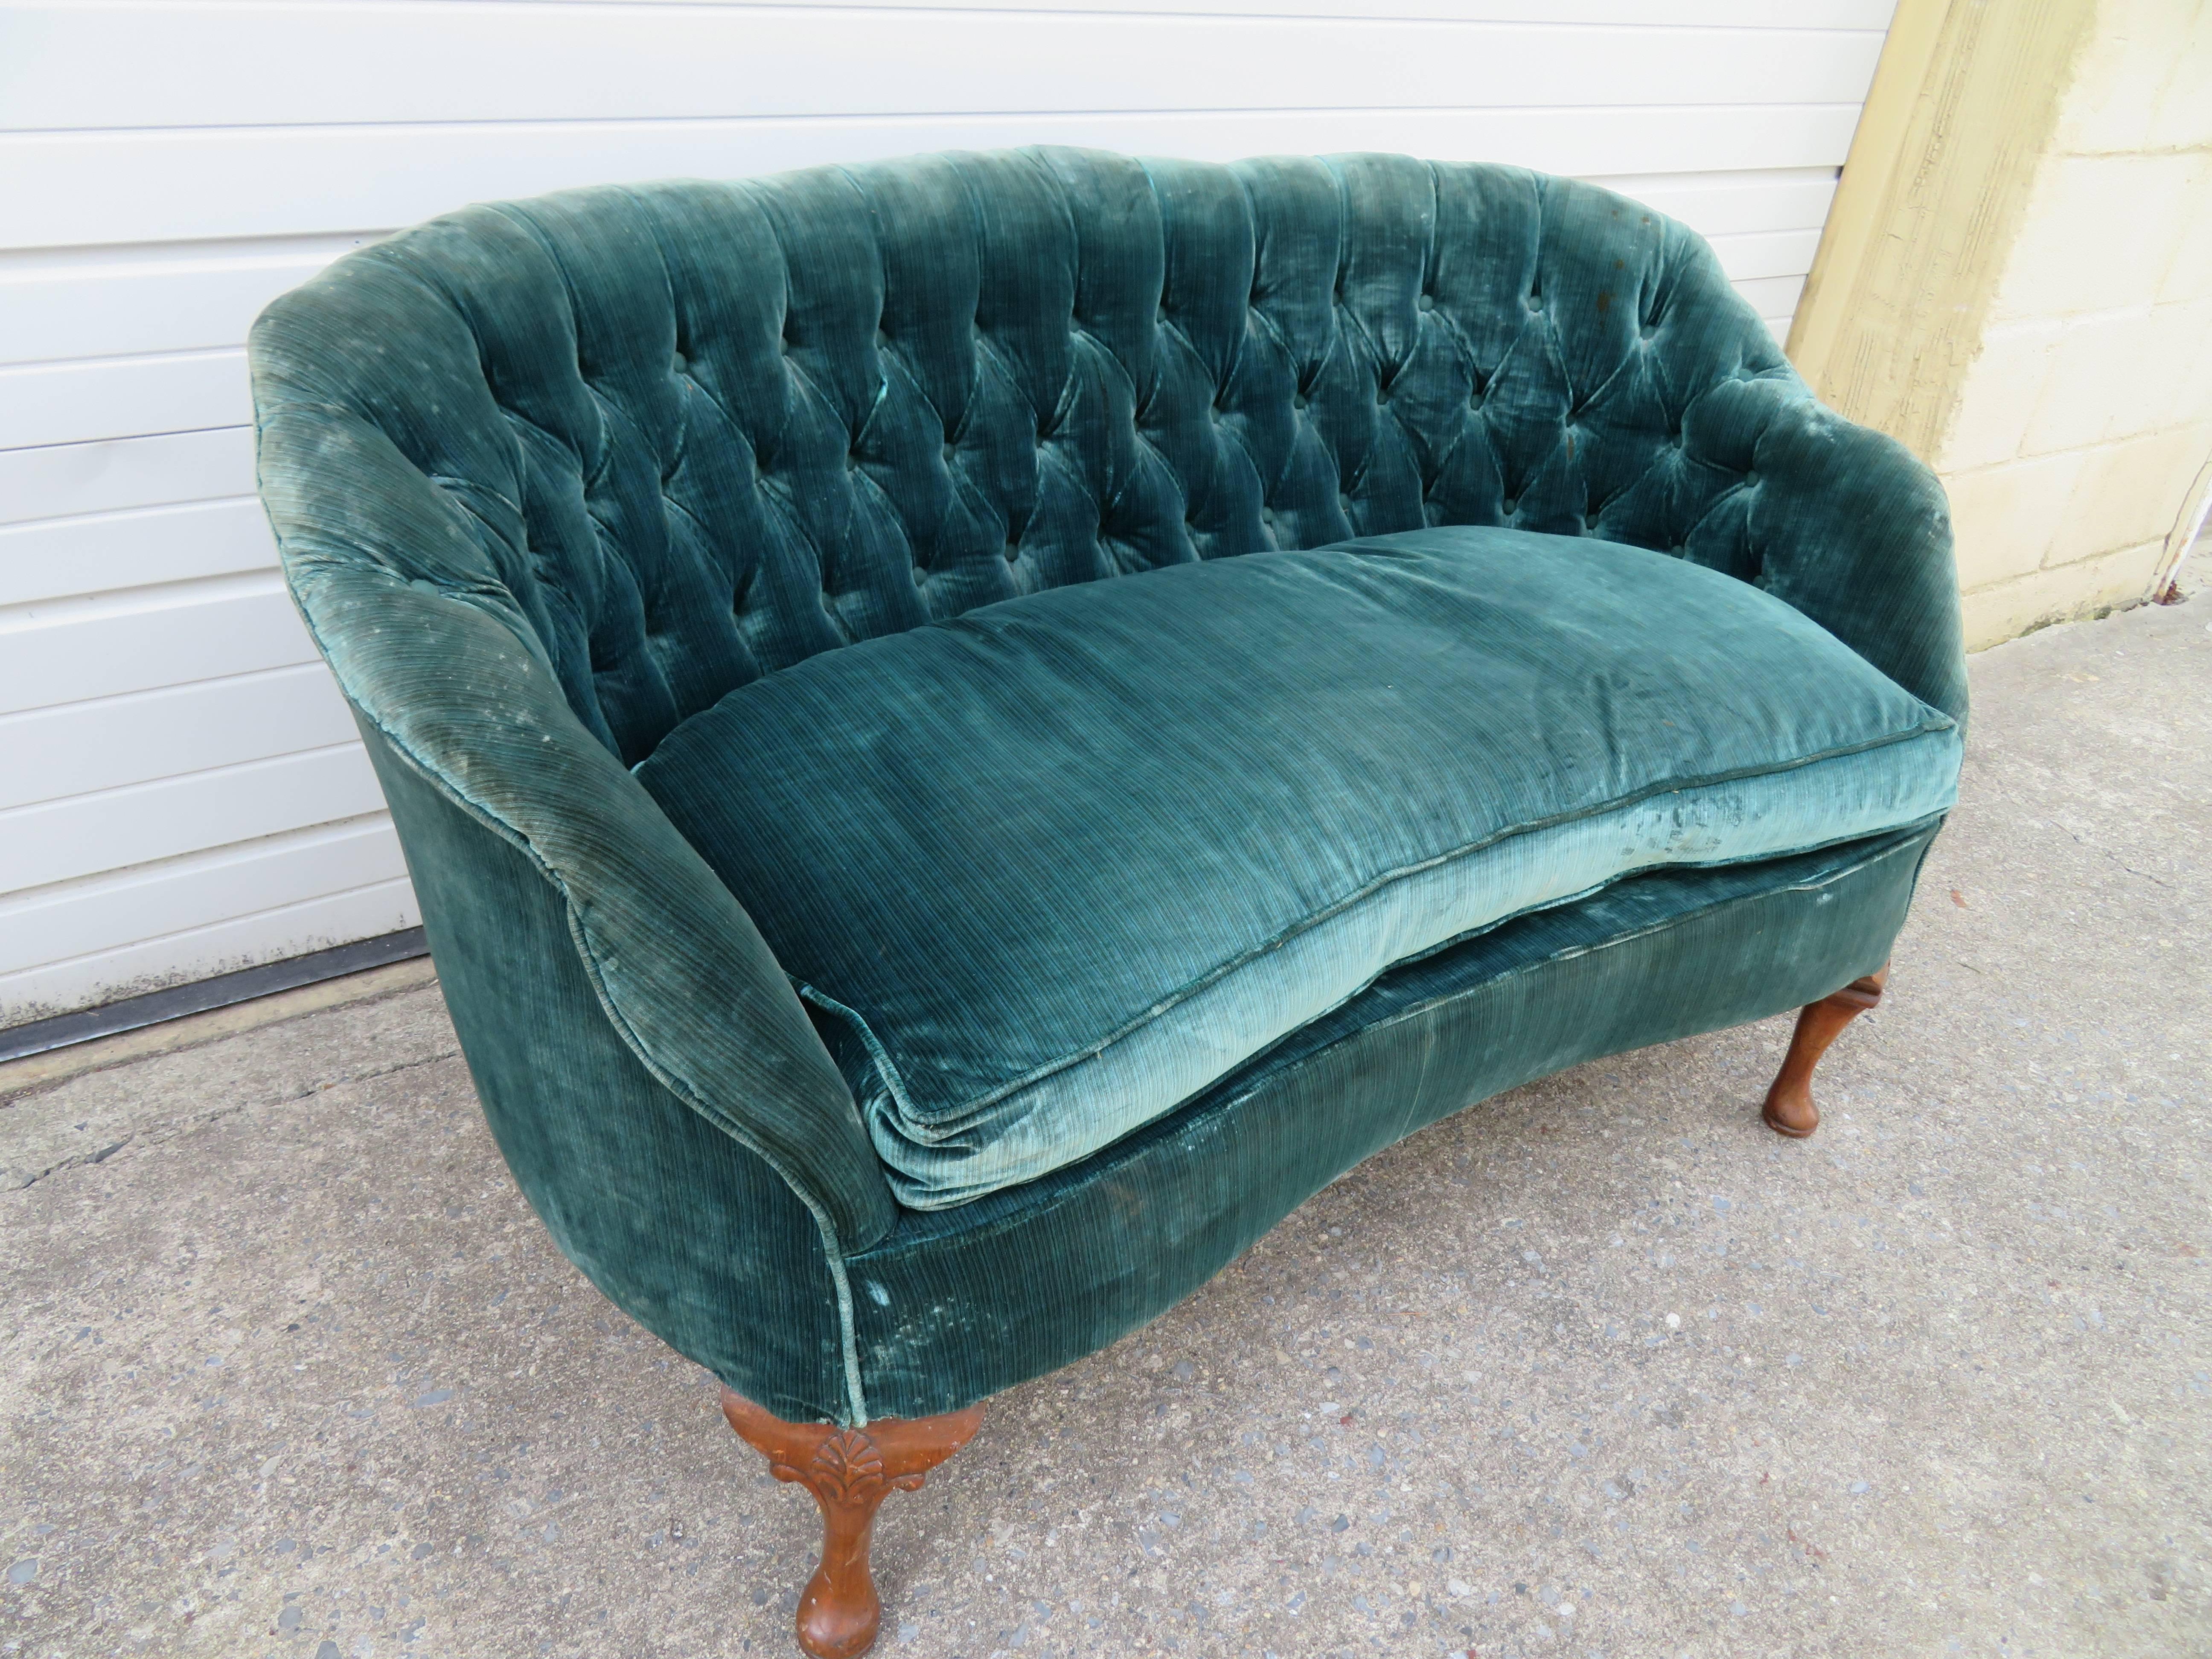 Upholstery Lovely Petite Hollywood Regency Tufted Loveseat Sofa For Sale